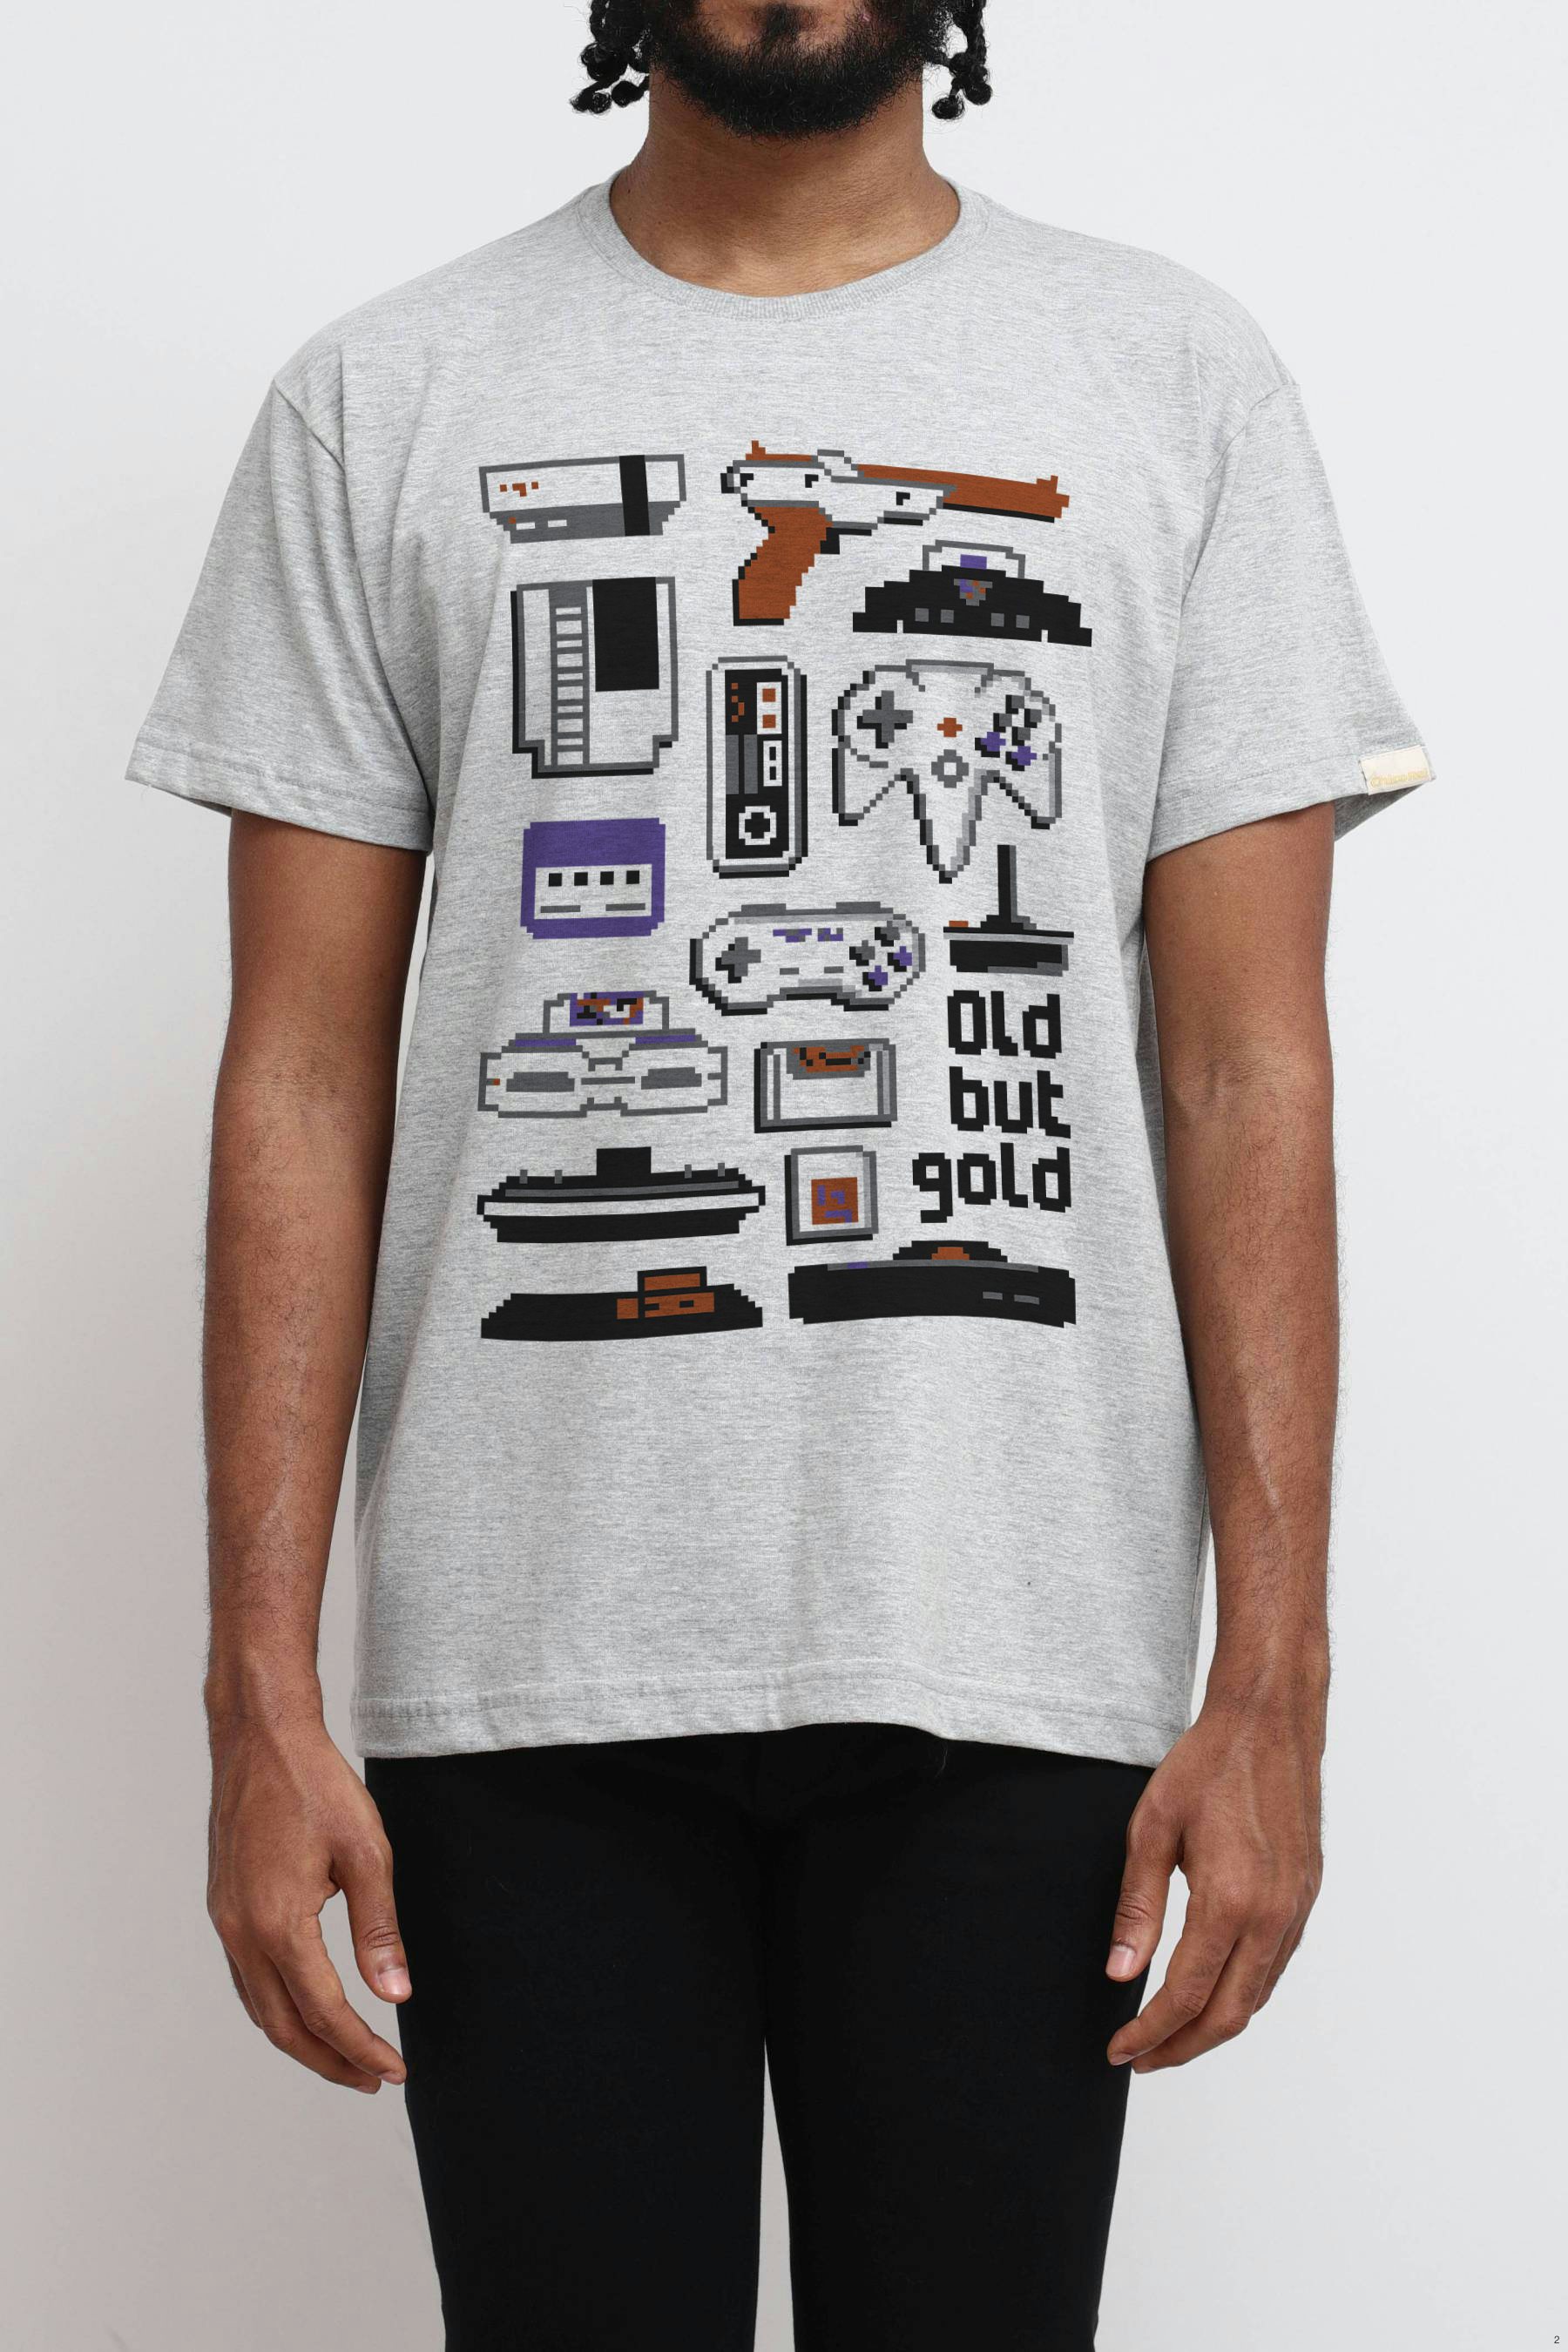 Camiseta Gamer Estampa Old But Gold - Unissex